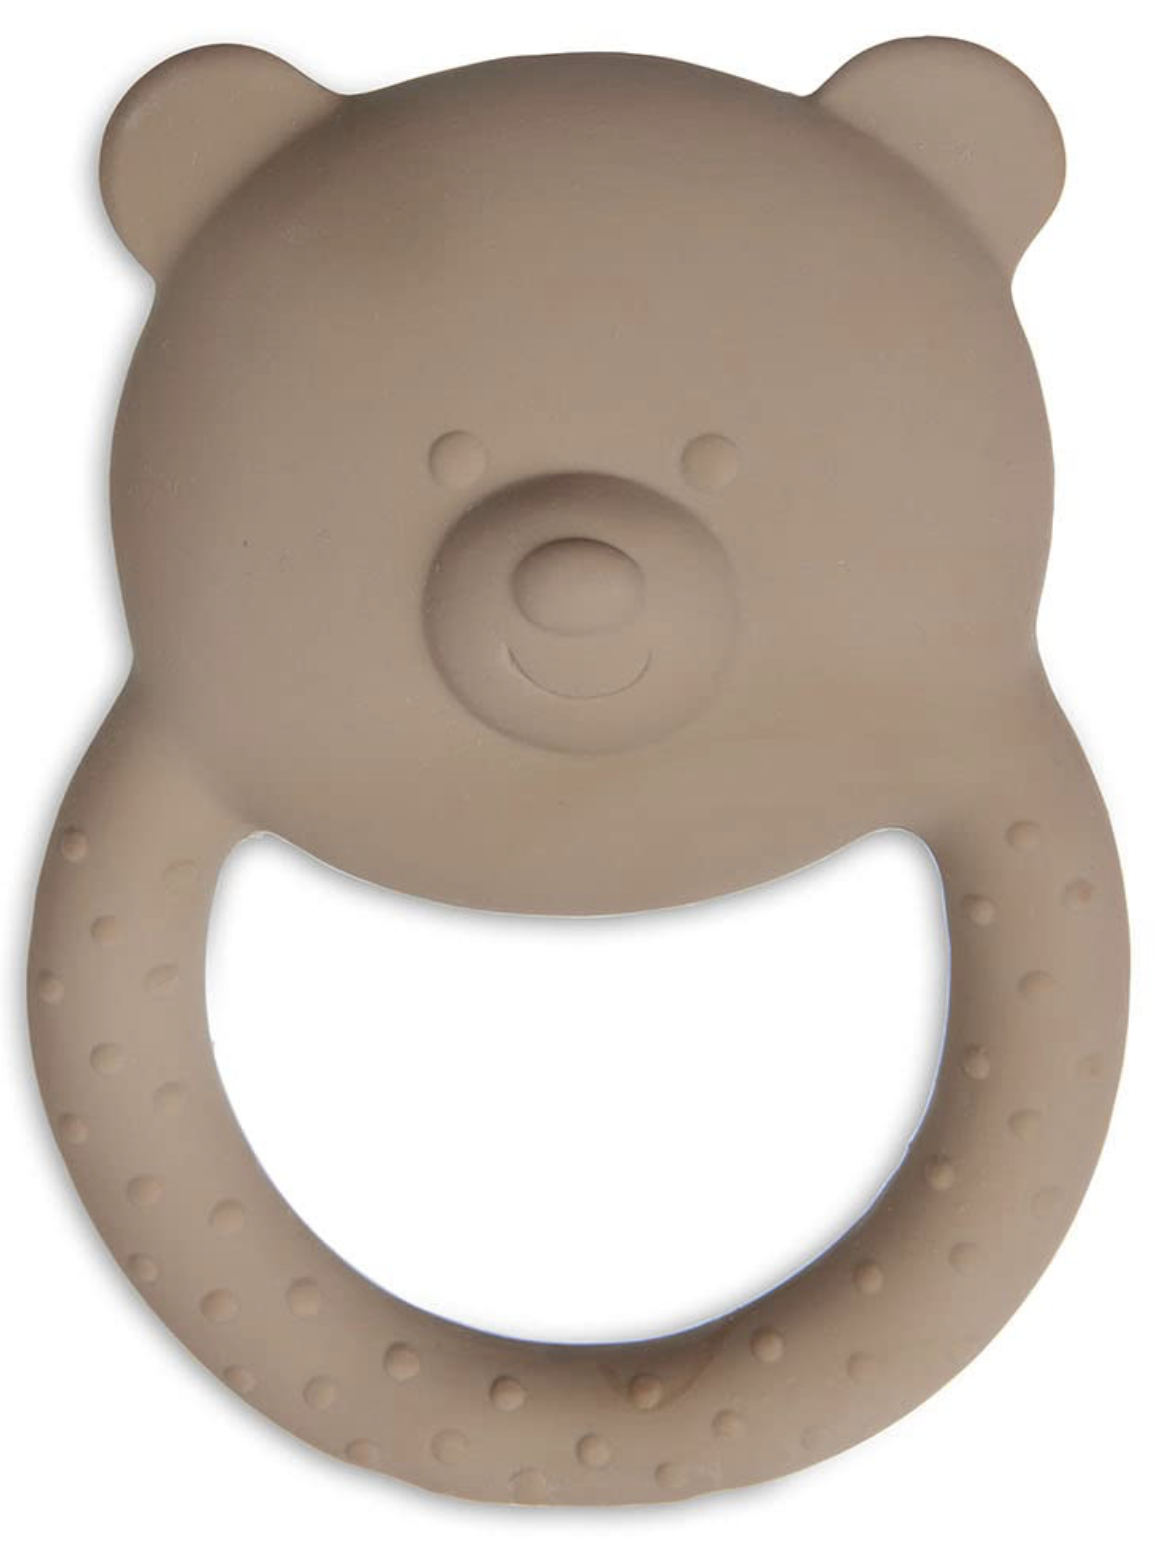 Gummi Beißring aus Naturkautschuk Teddybär biscuit